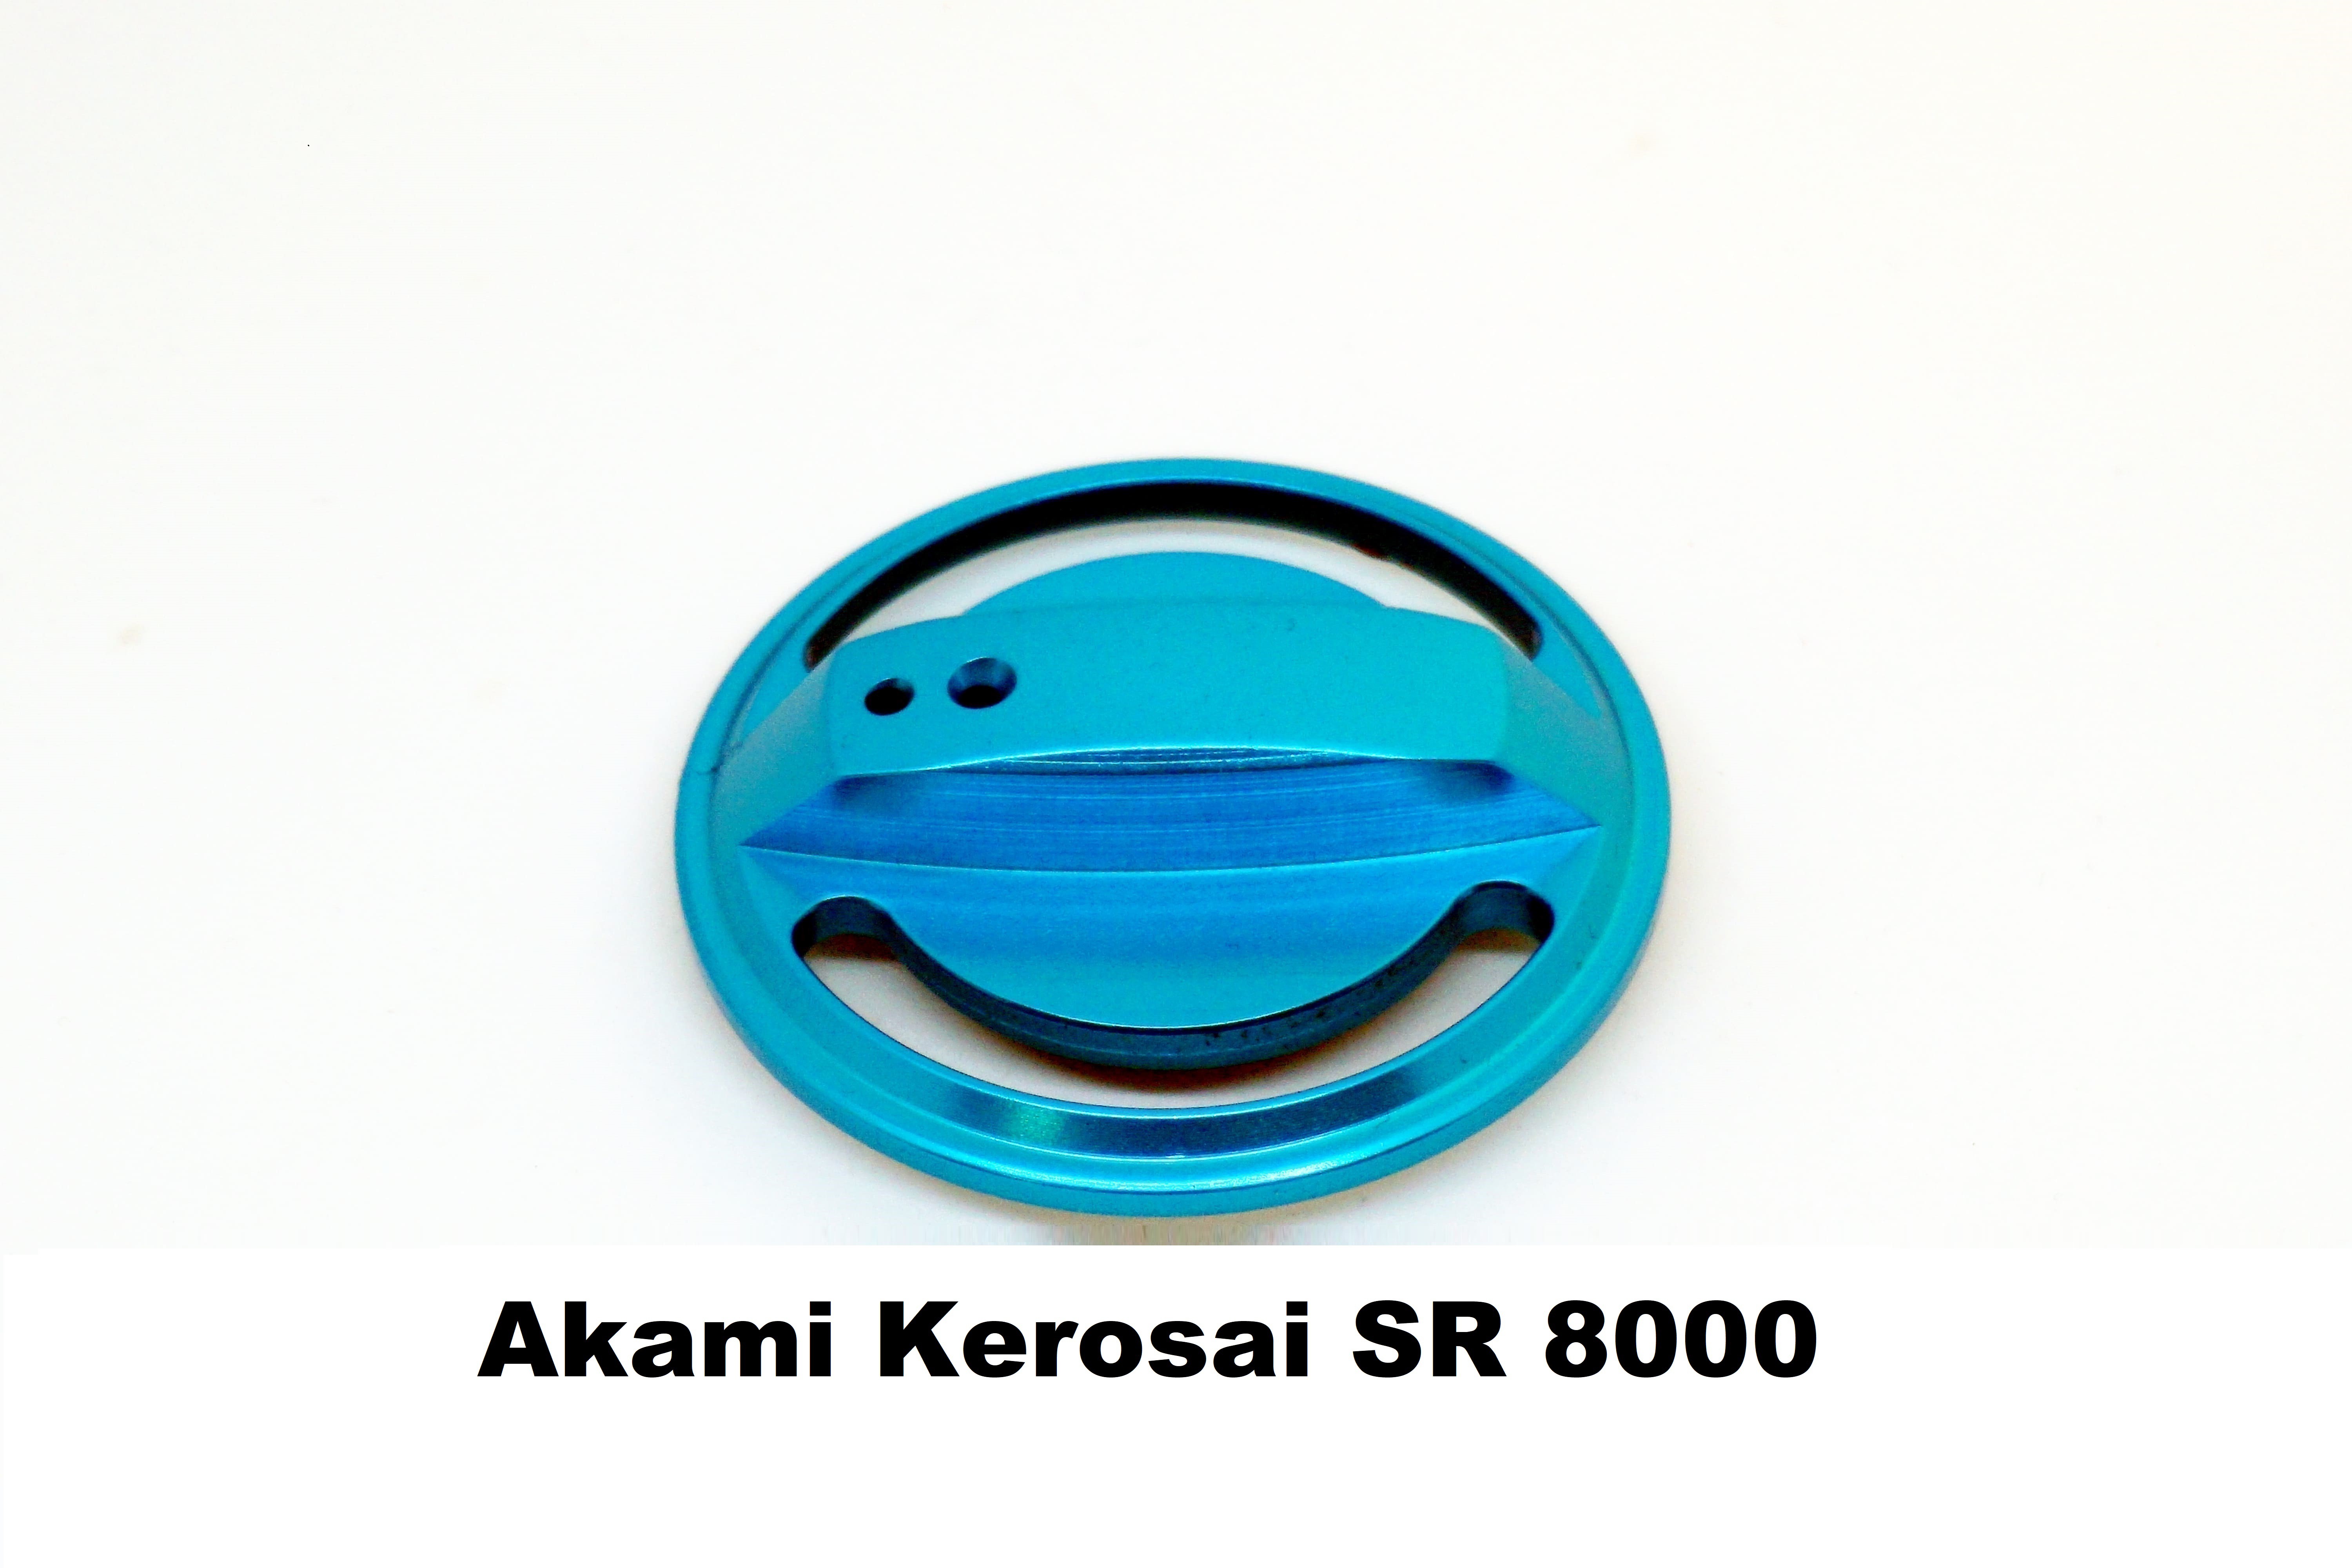 Bouchon de Fren Akami Kerosai SR 8000